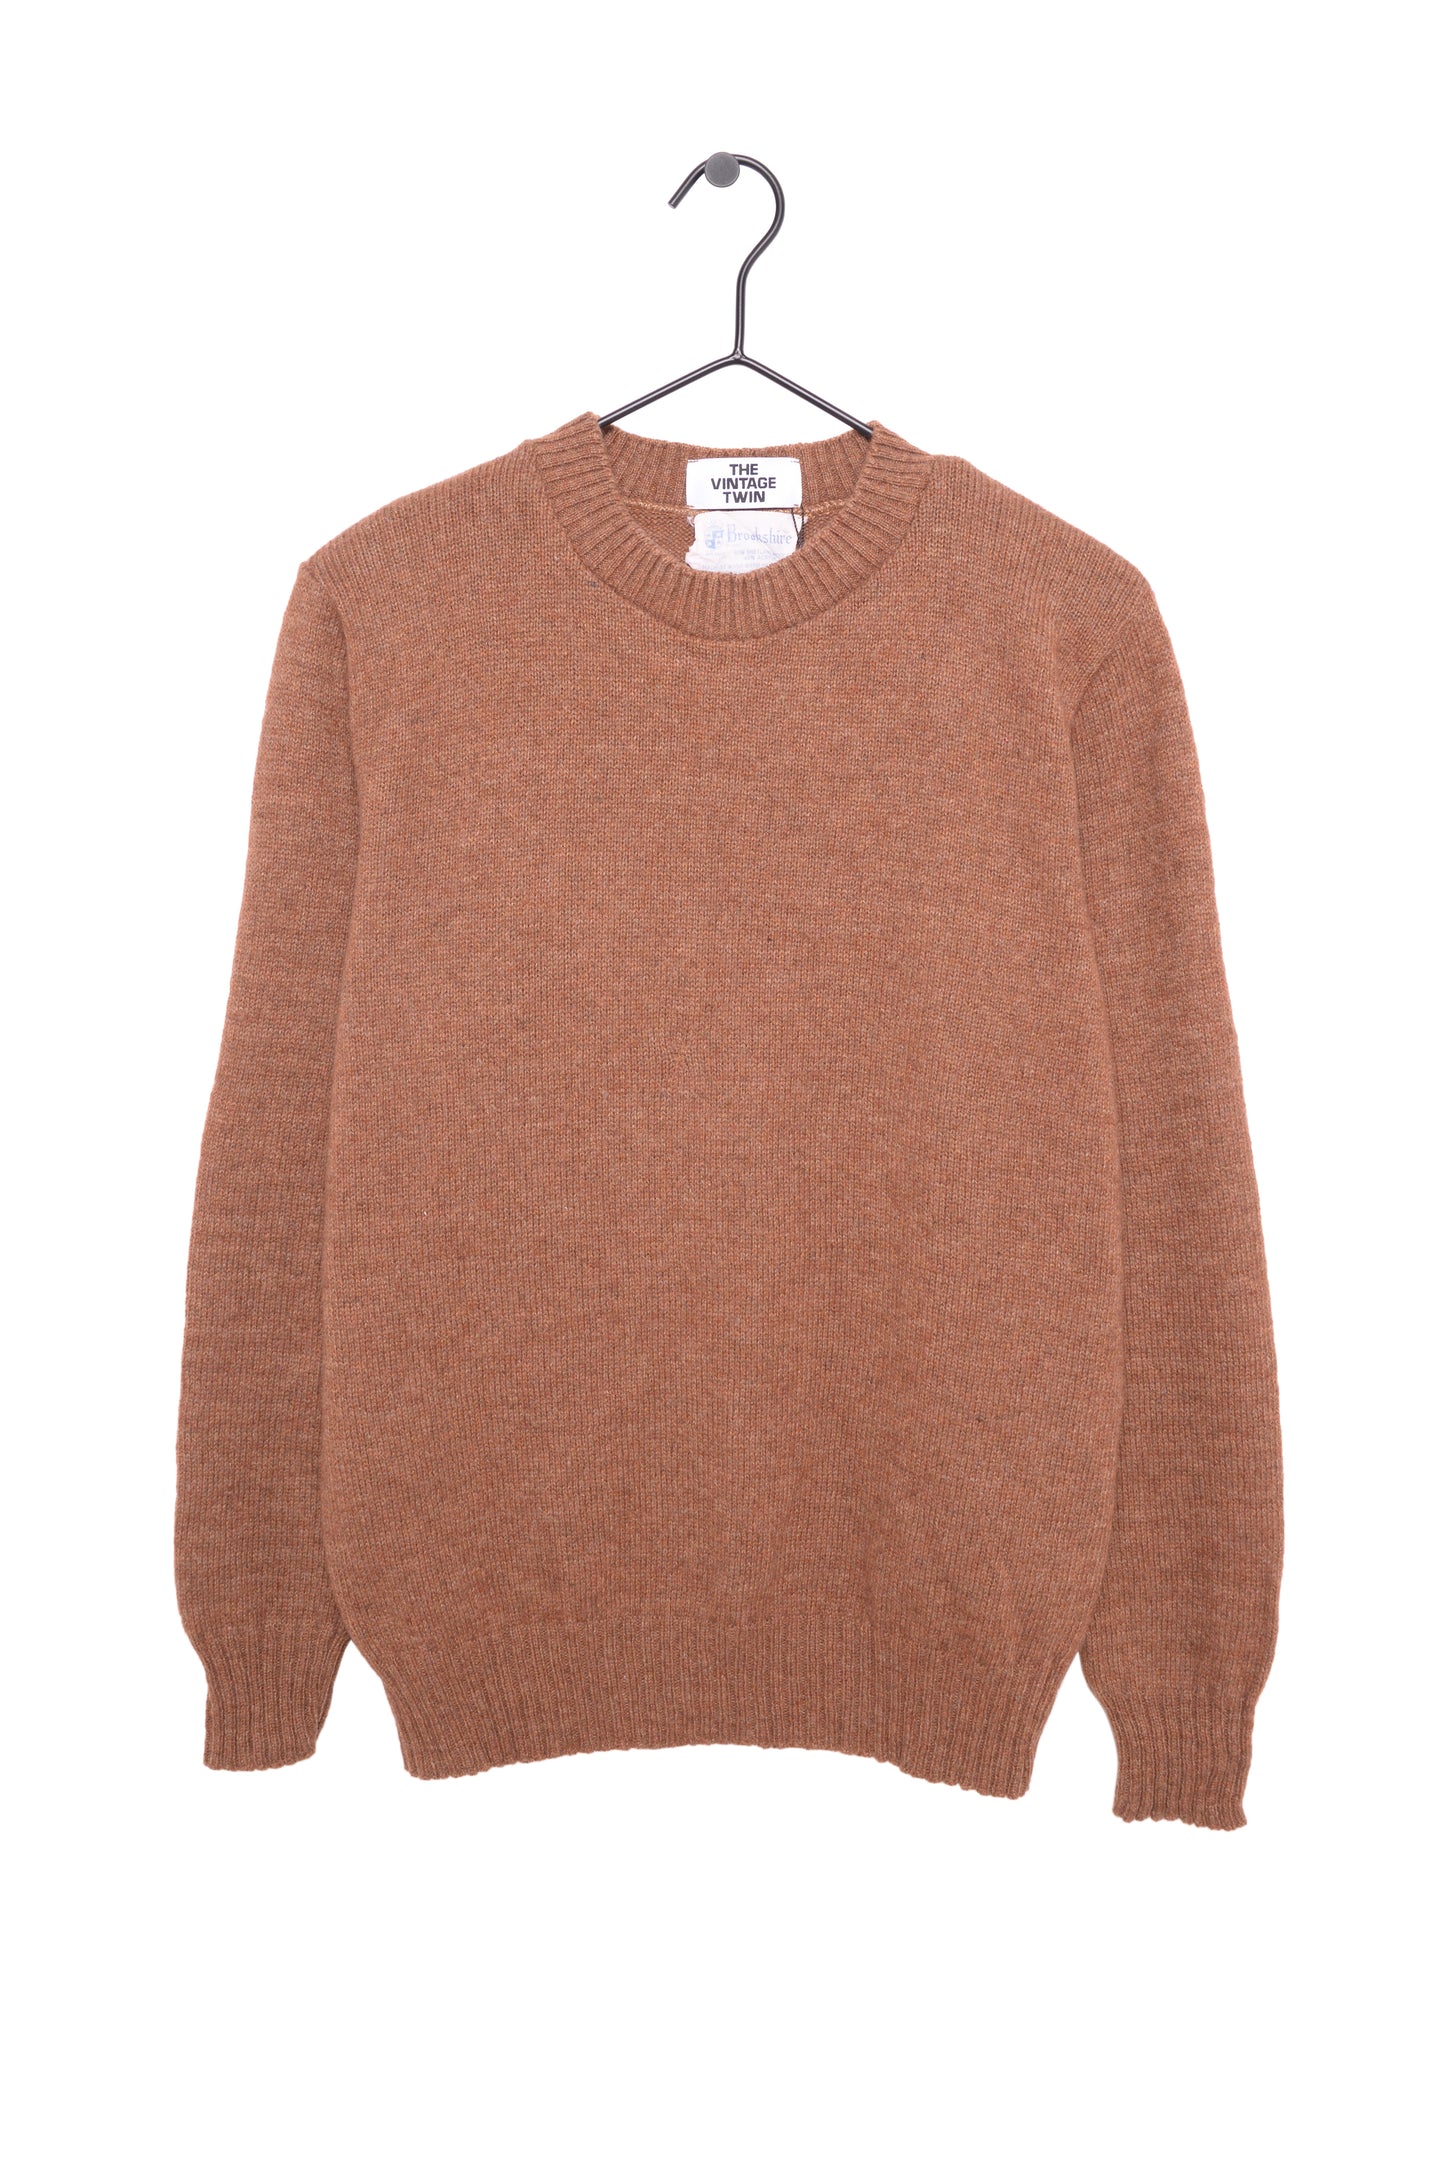 1960s Shetland Wool Sweater